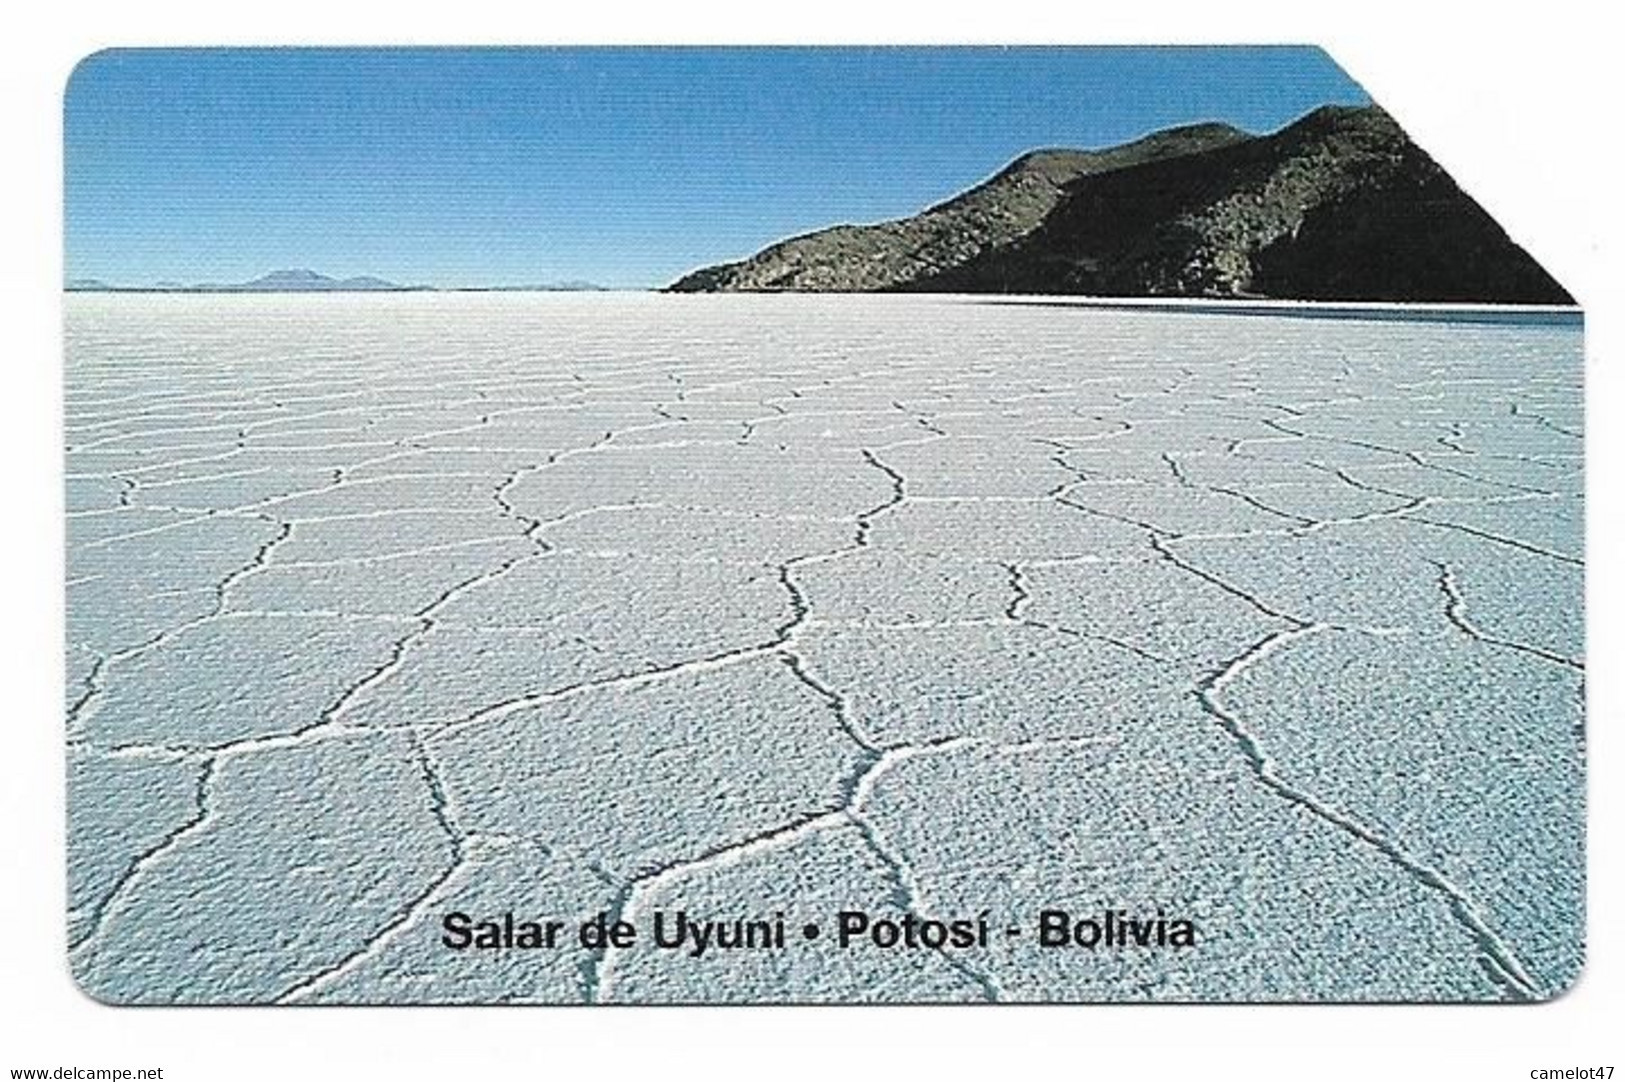 Bolivia, Entel, Urmet Used Phone Card, No Value, Collectors Item, # Bolivia-41 - Bolivien